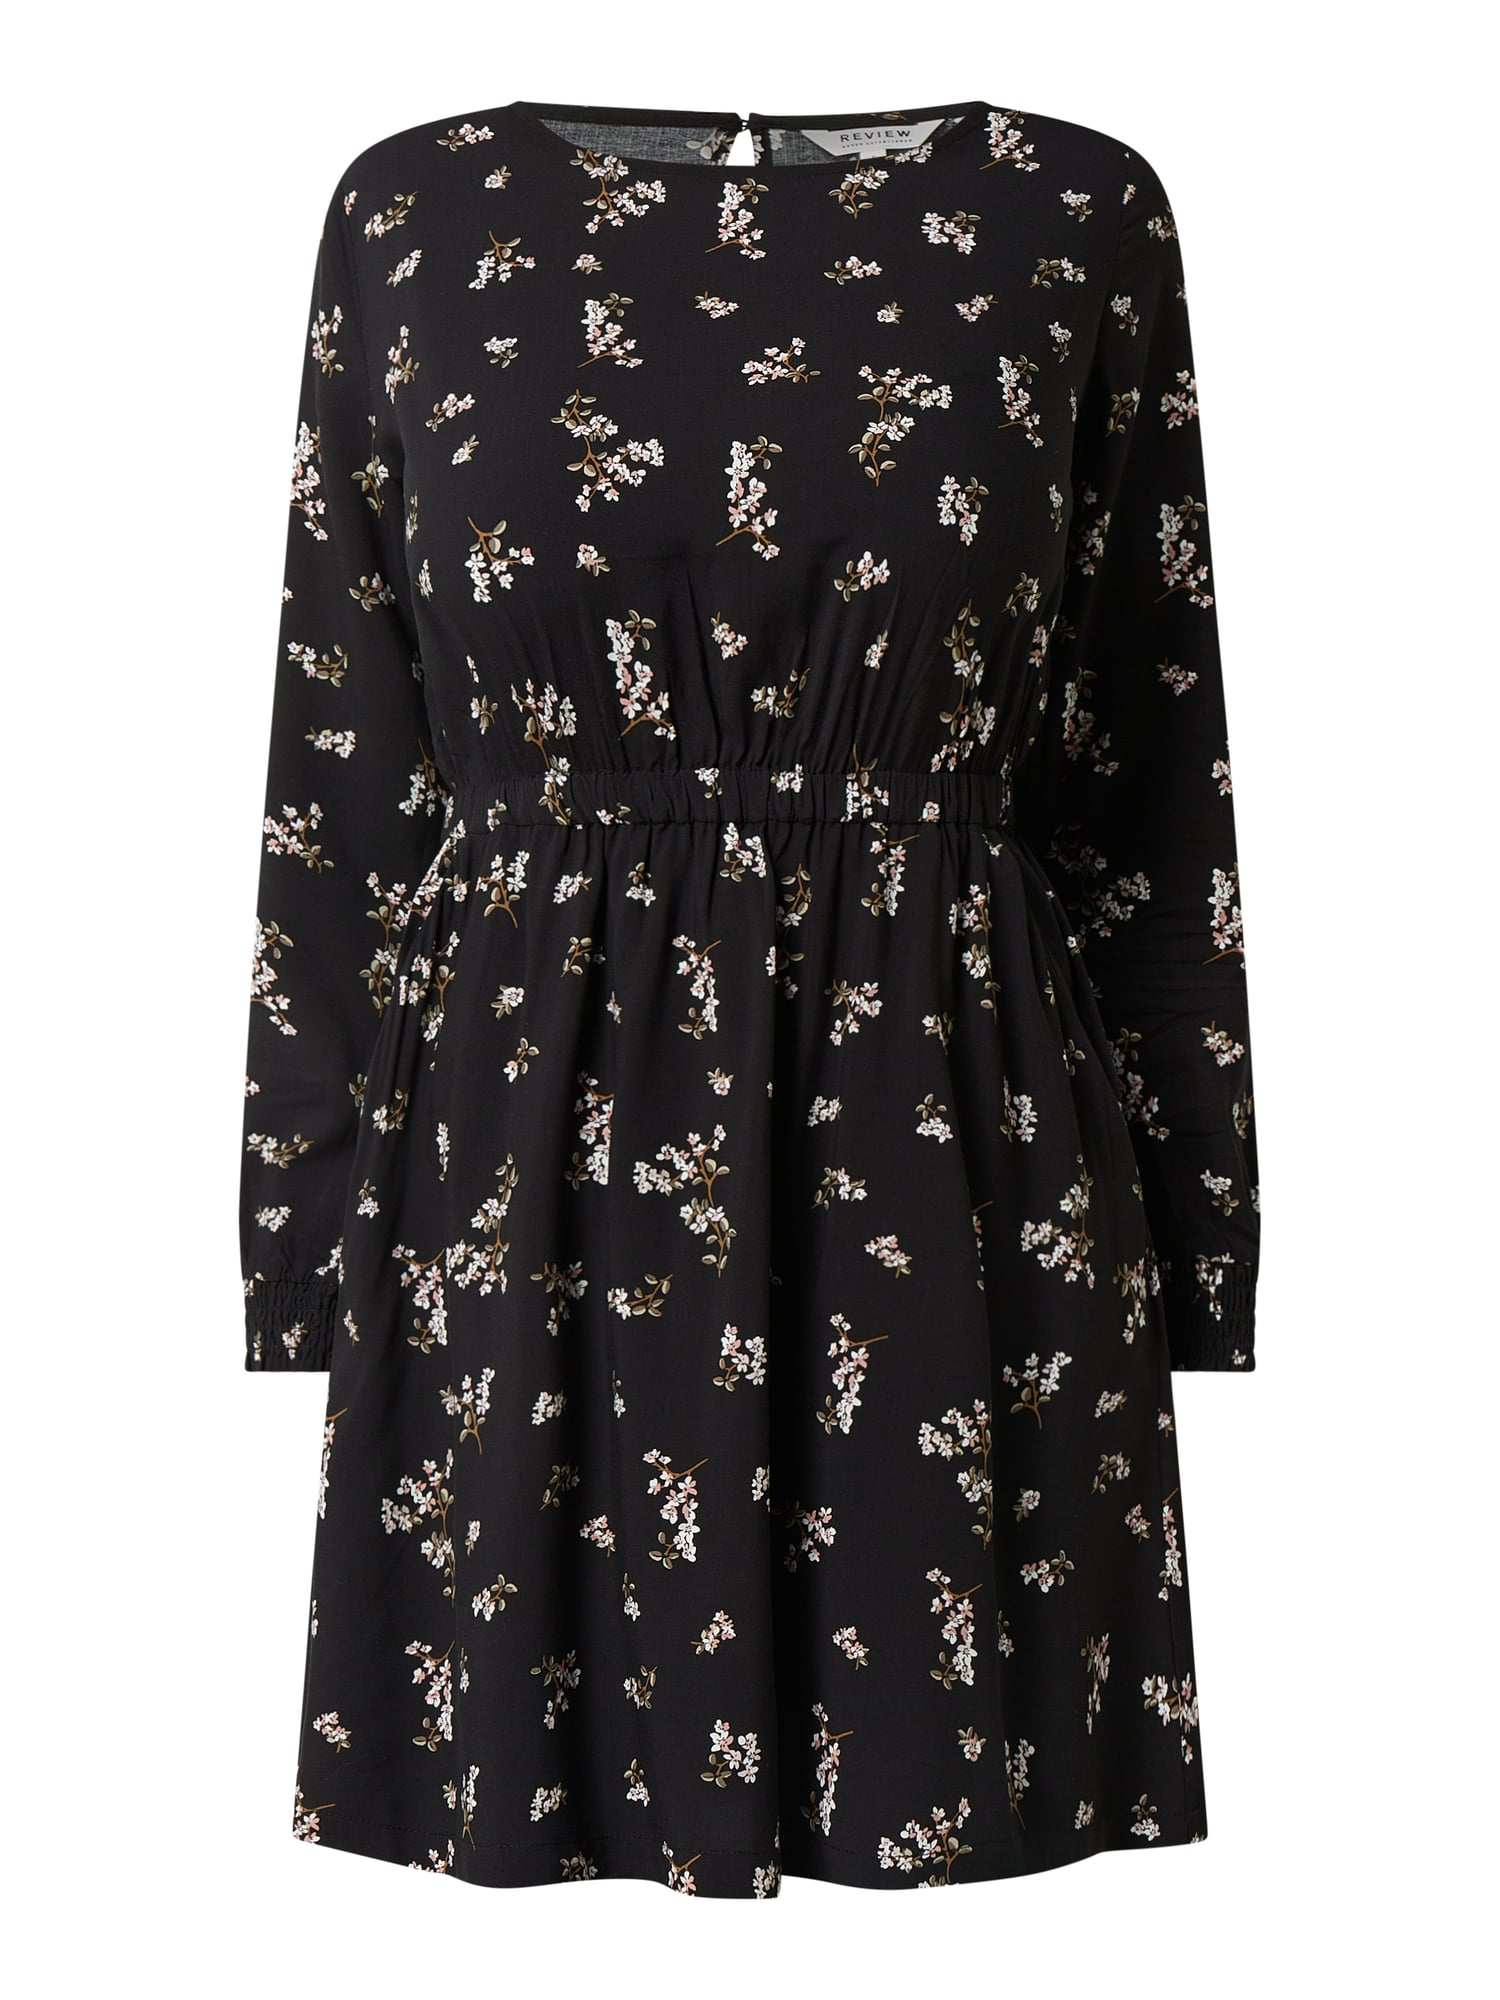 Review Kleid Mit Floralem Muster In Grau Schwarz Online Kaufen 1207754 P C Online Shop